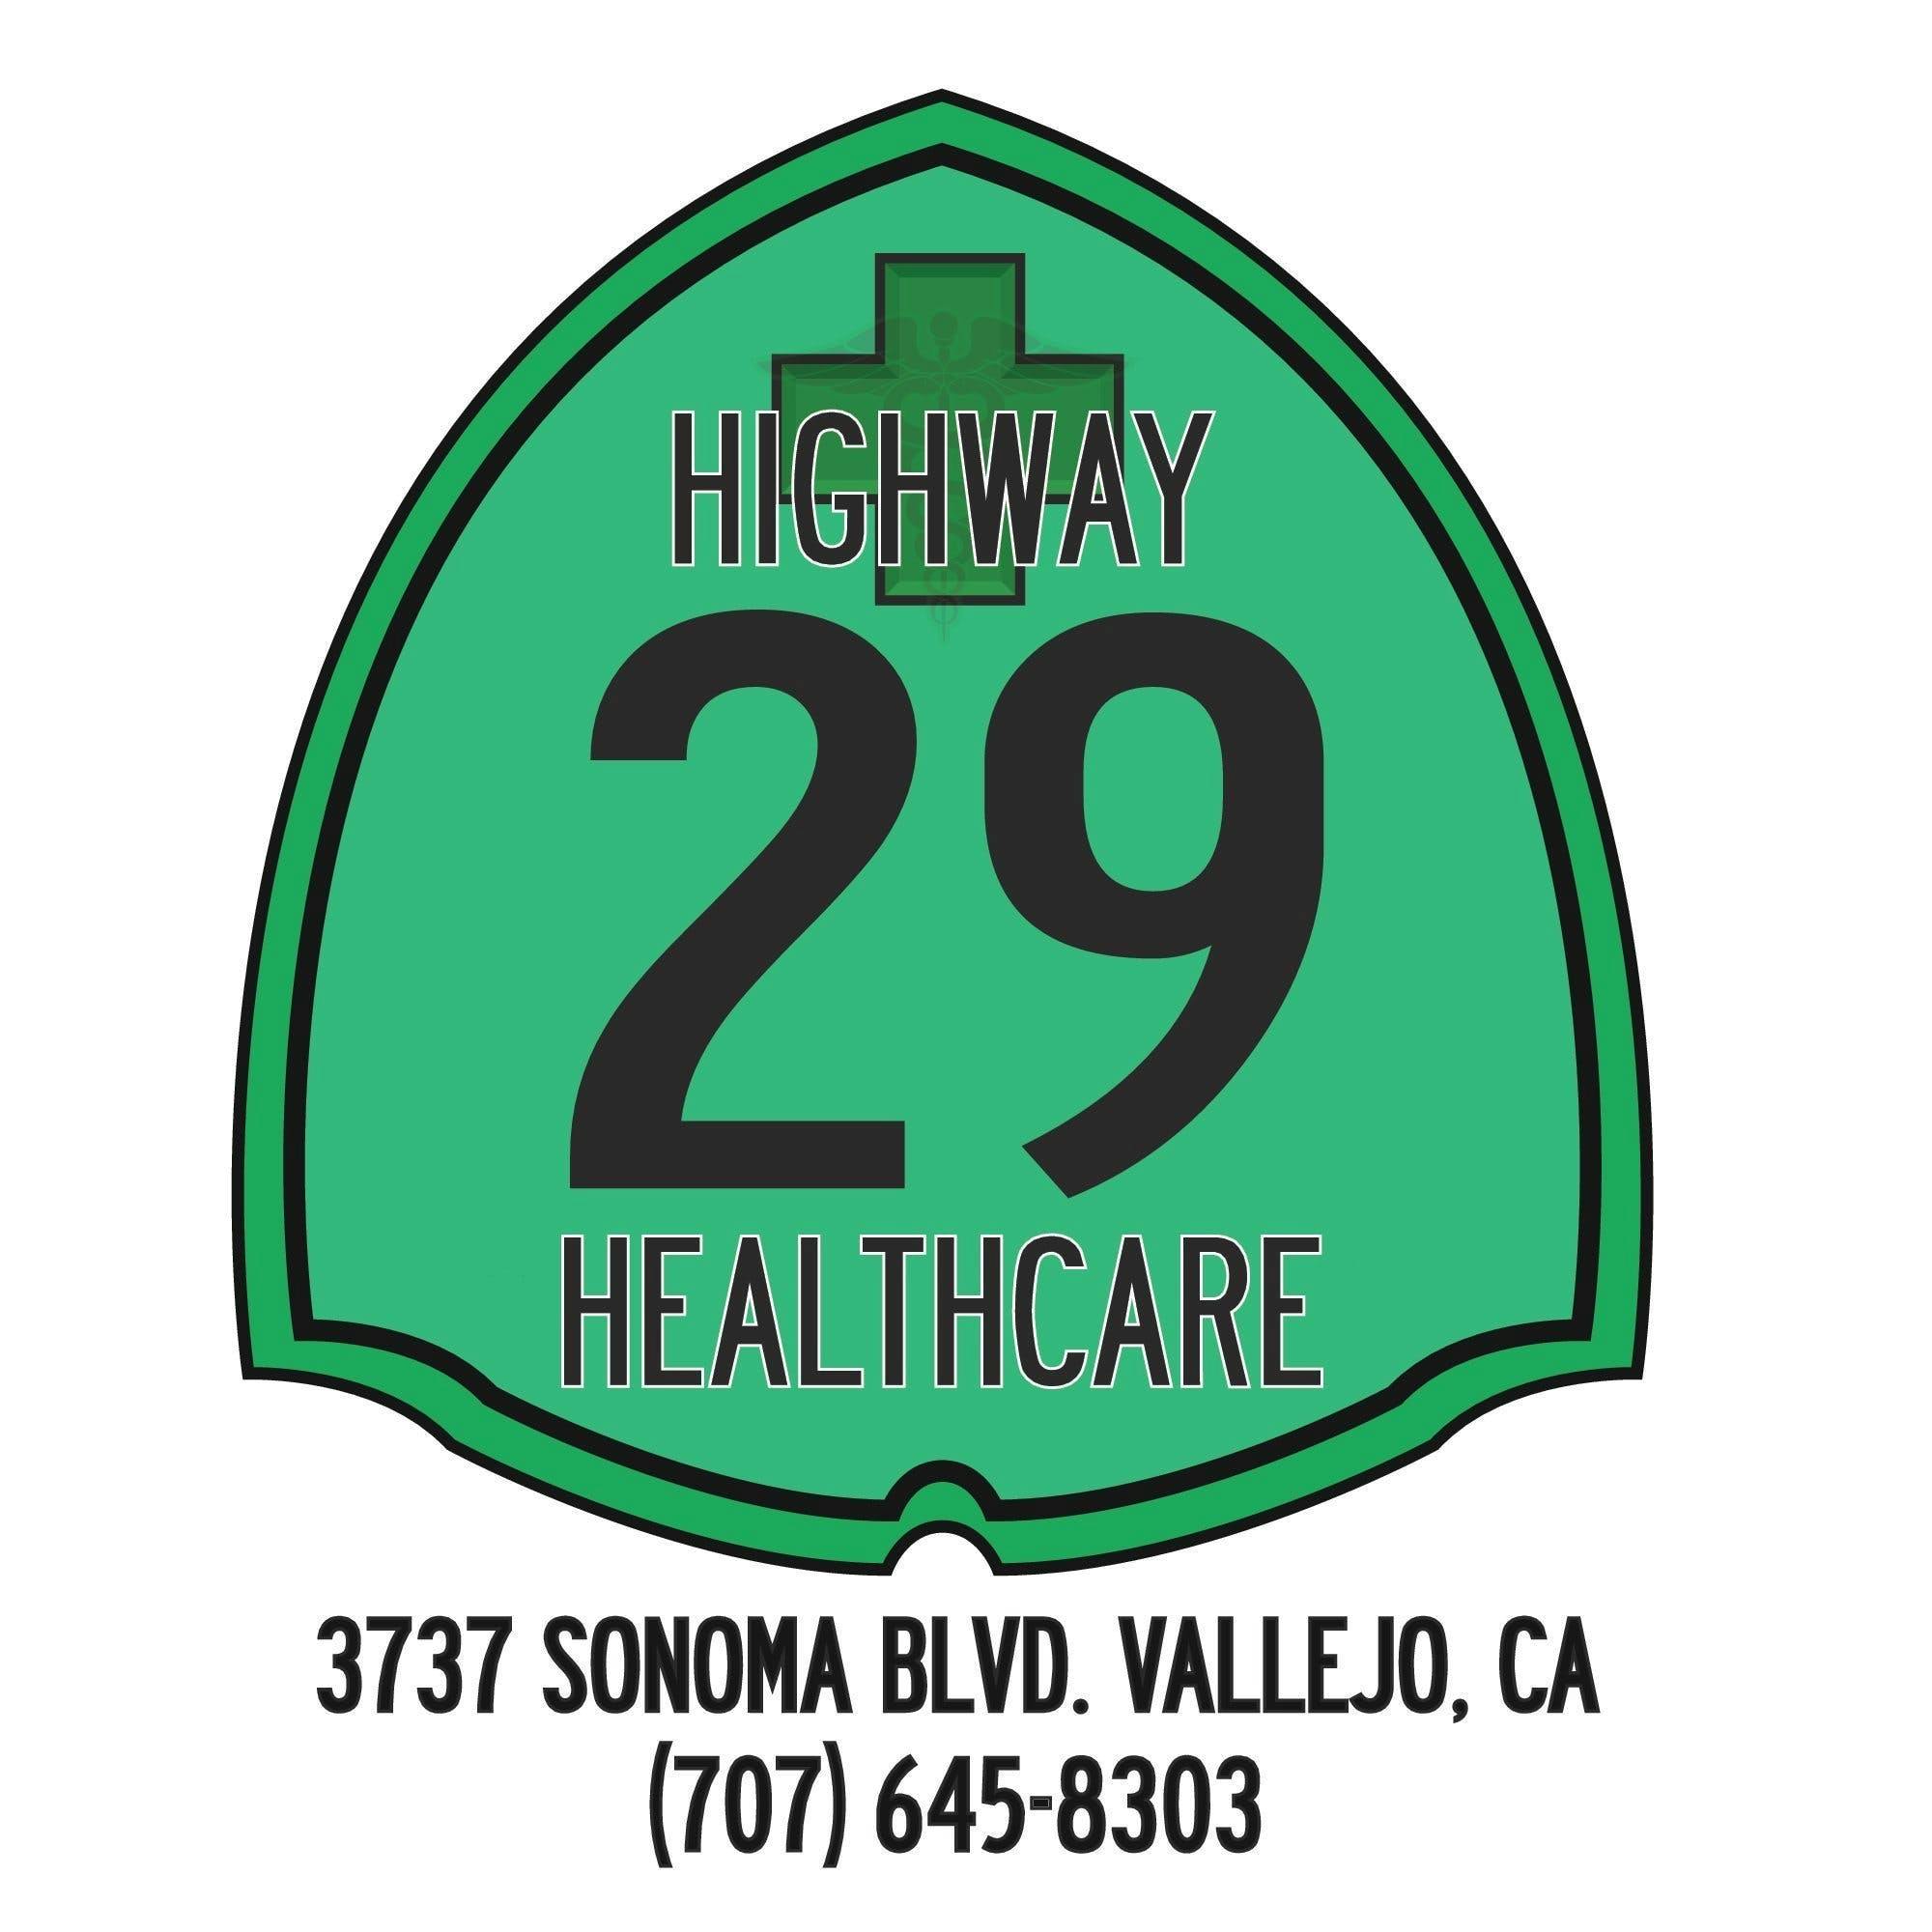 Highway 29 Healthcare